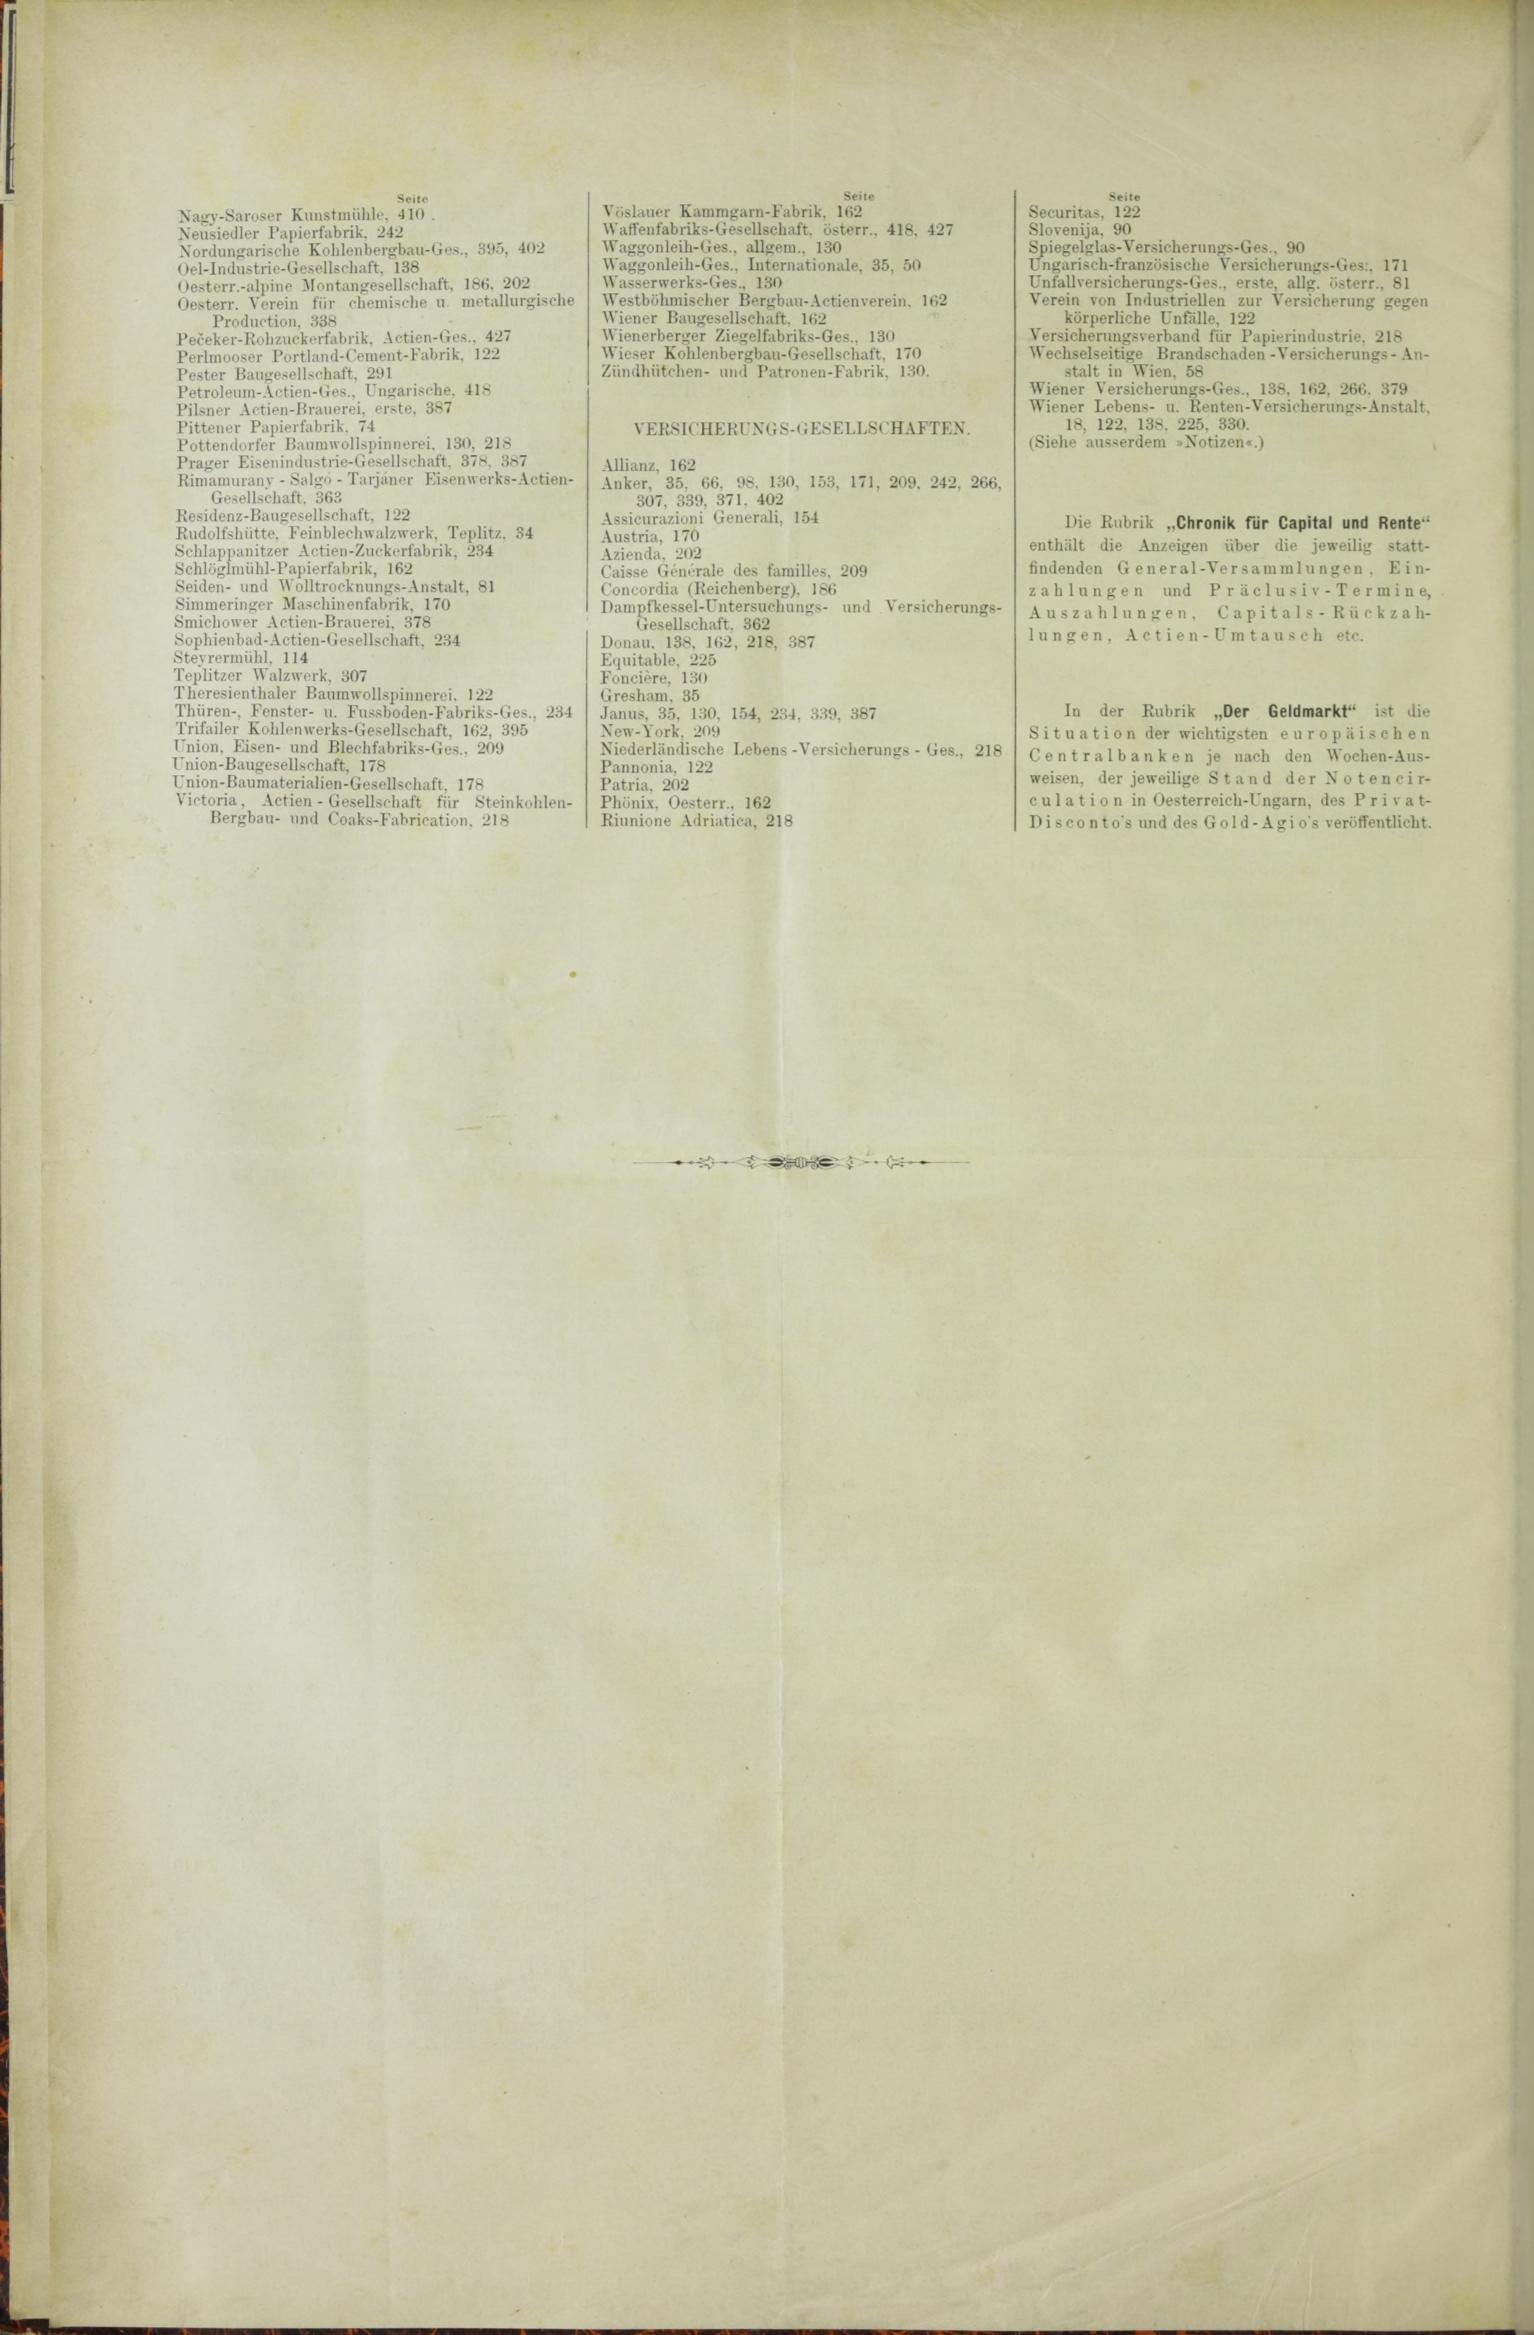 Der Tresor 31.12.1885 - Seite 12